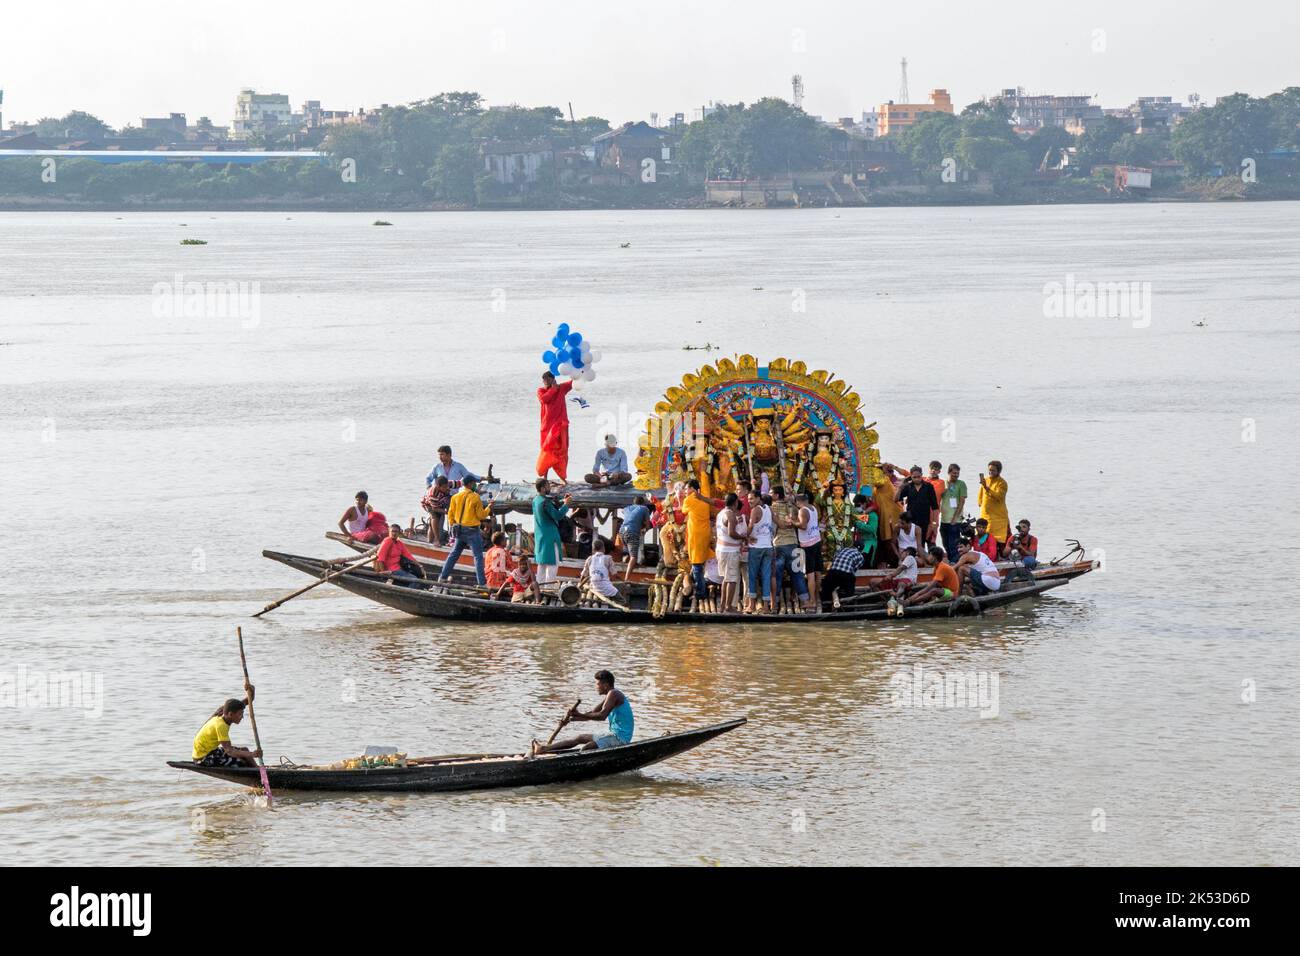 Les préparatifs pour l'immersion de l'idole Durga de Shobhabazar Rajbari à Kolkata sont en cours à Ganga Ghat. Banque D'Images